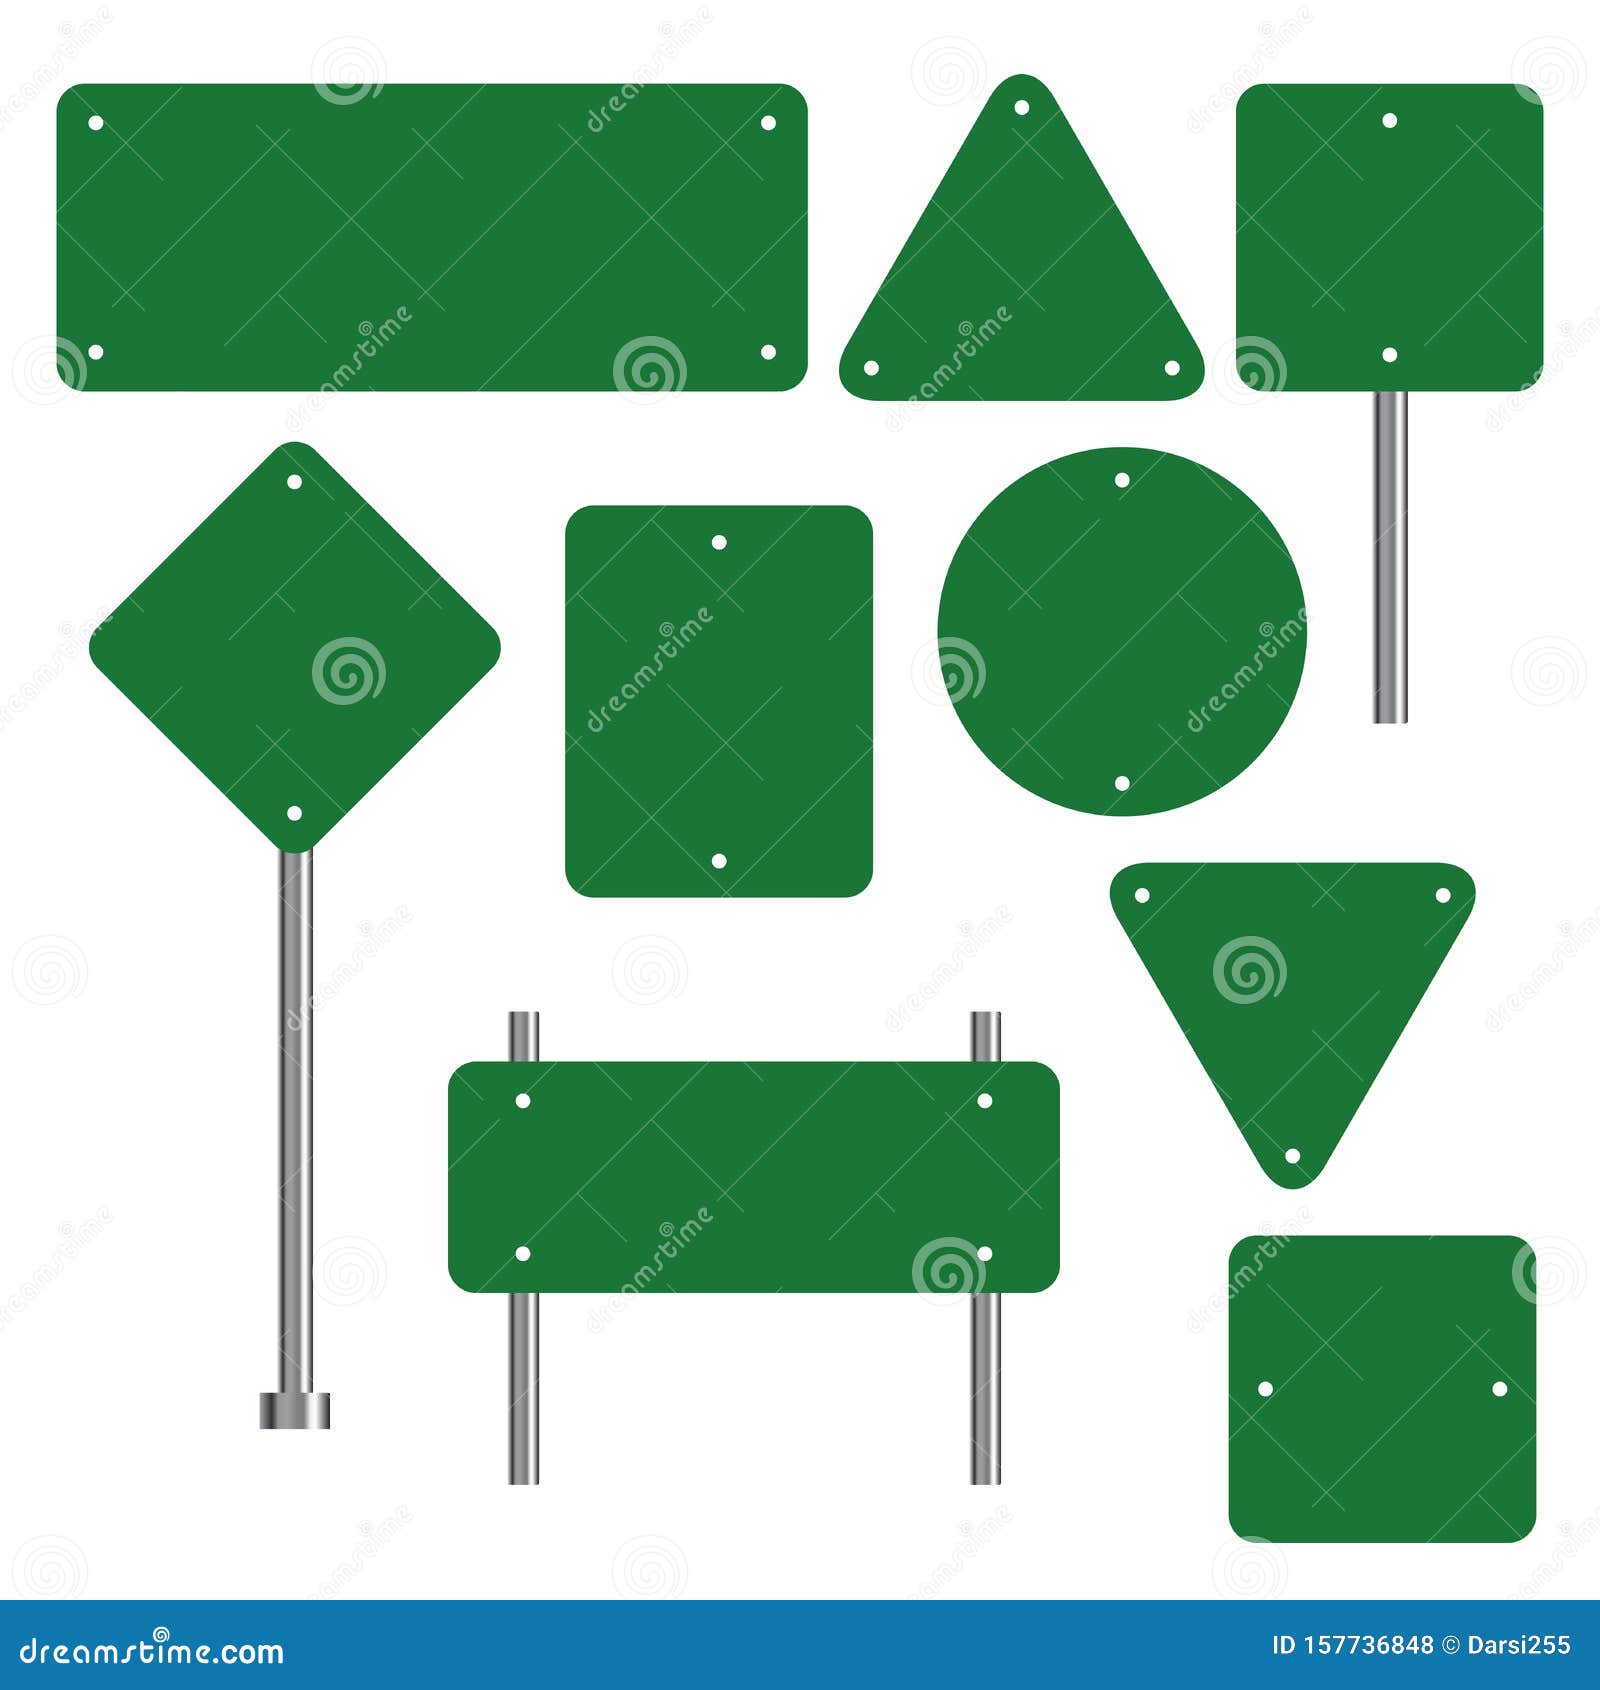 Các biển báo giao thông trống sẽ giúp bạn hiểu rõ hơn về quy tắc và khu vực cấm. Hãy cùng xem hình ảnh để học hỏi những kiến thức về biển báo giao thông nhé.